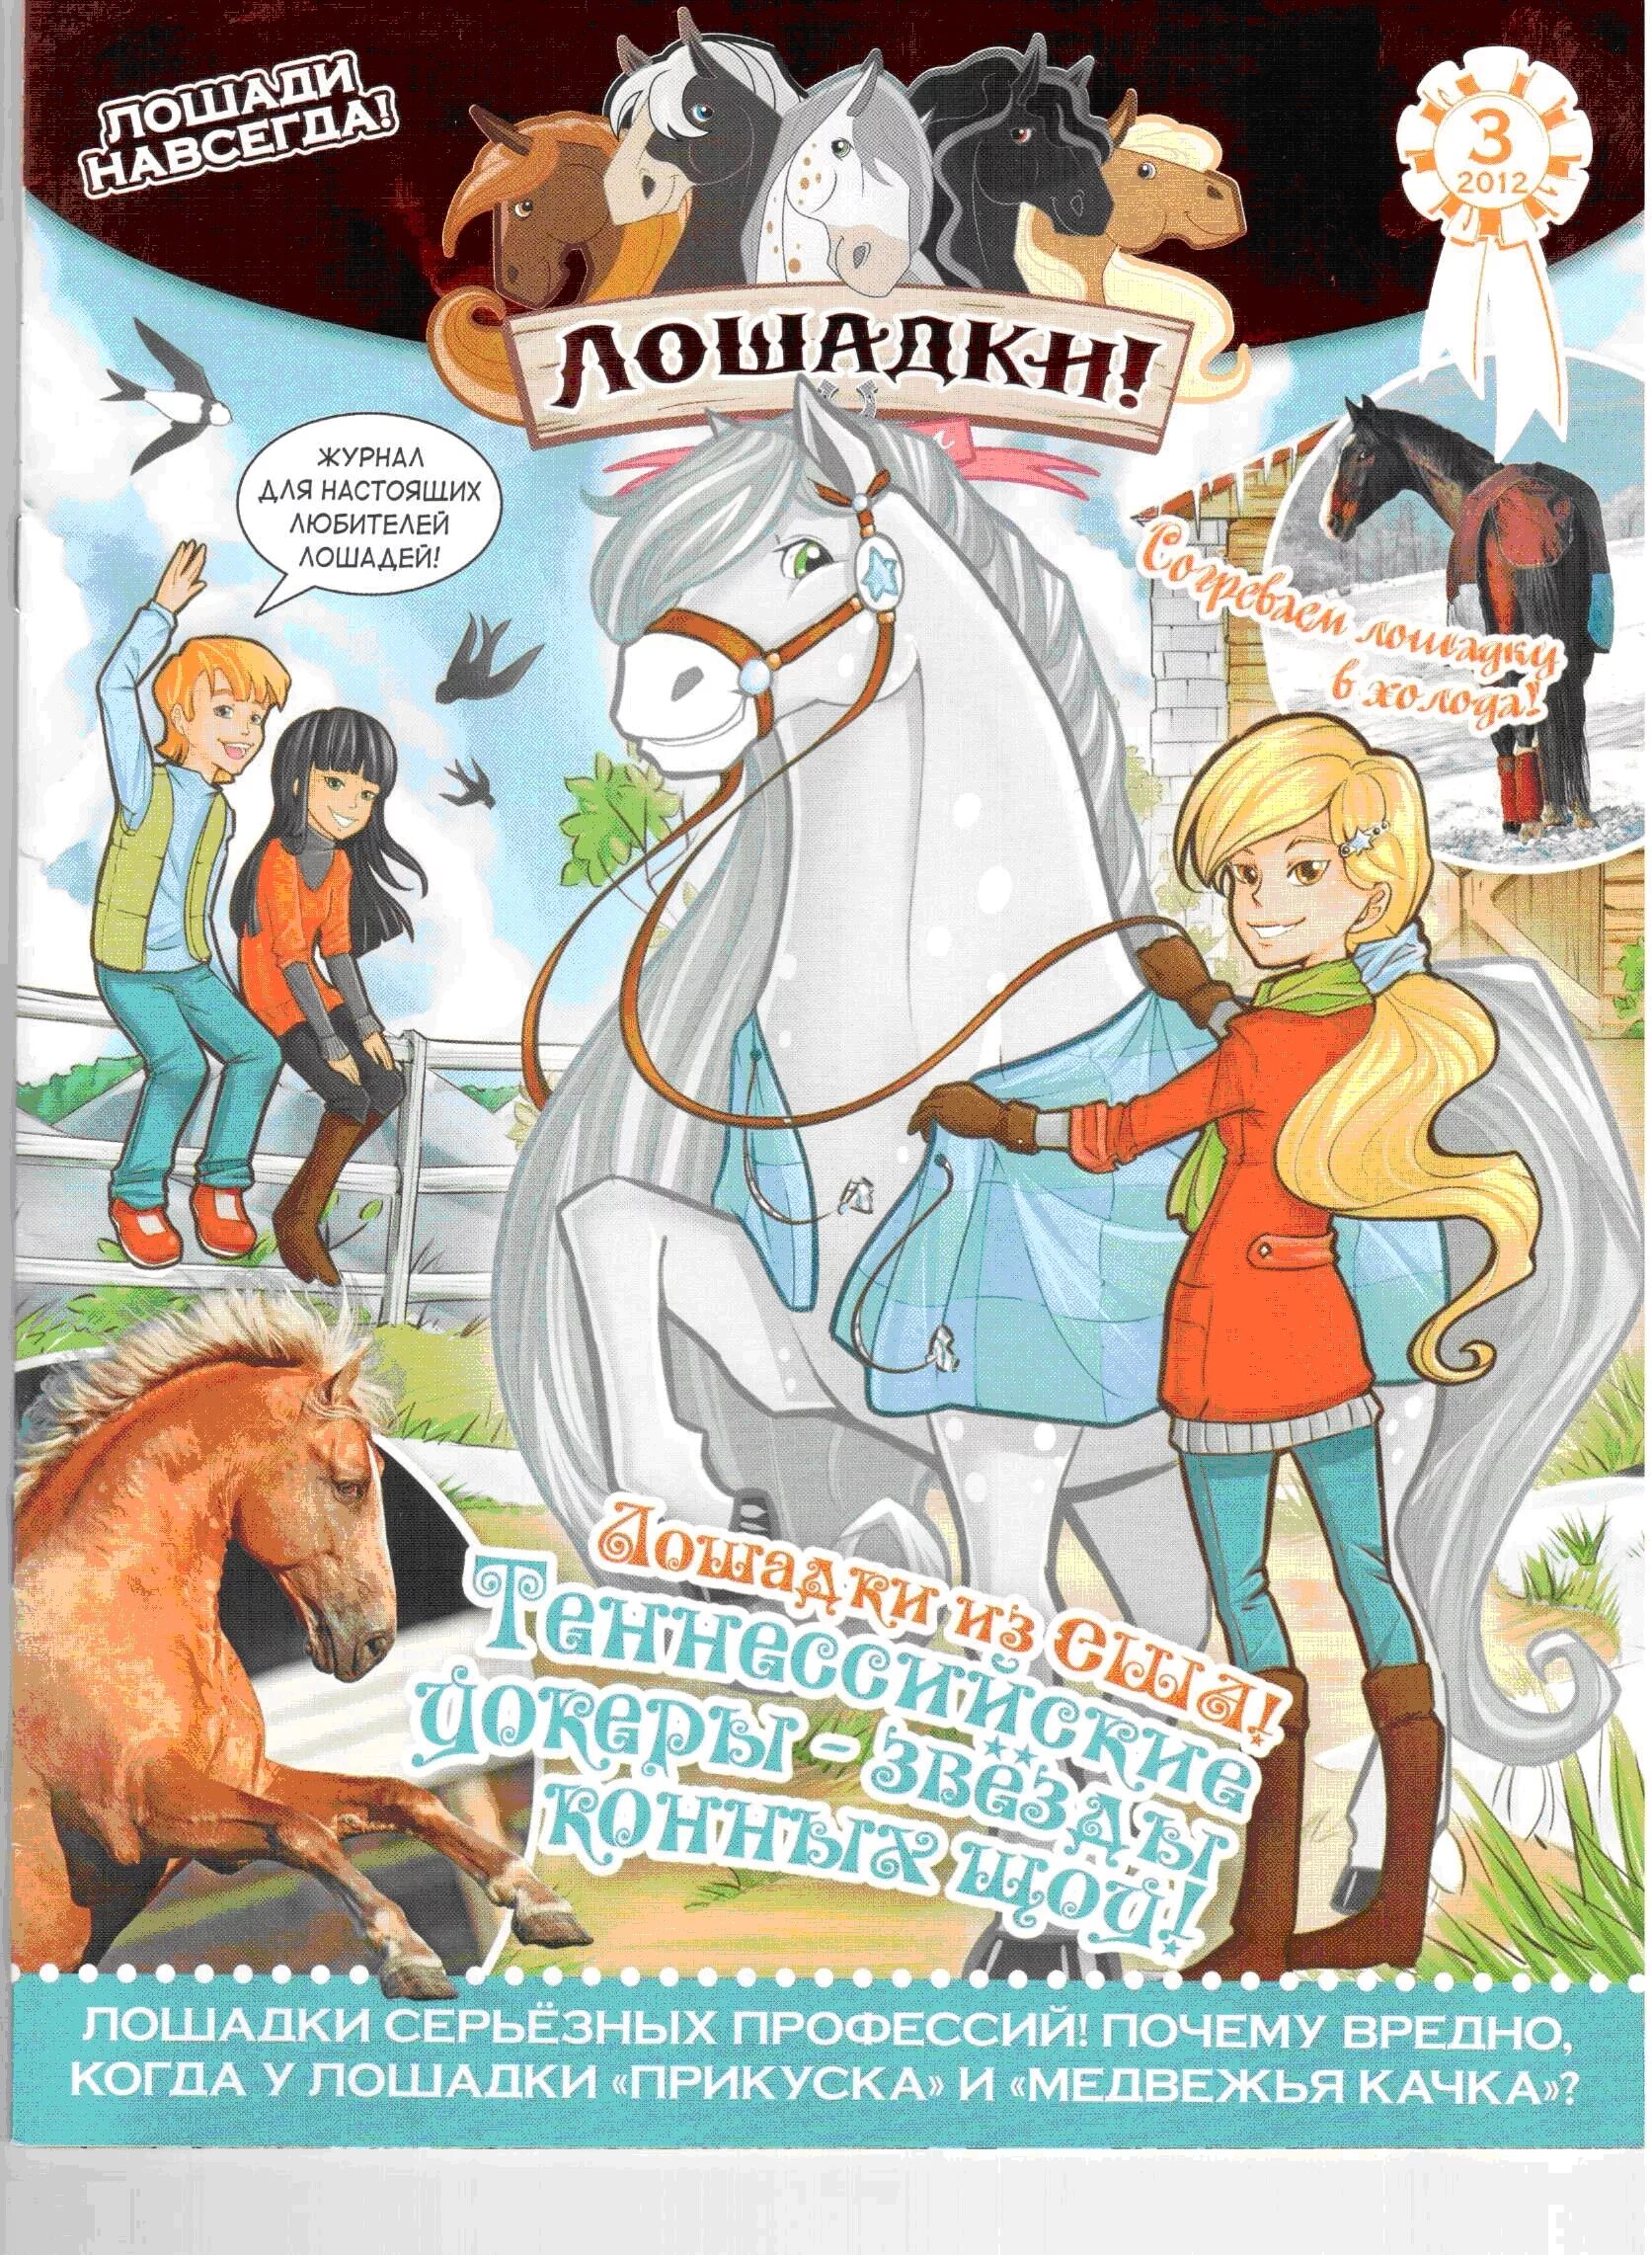 Лошадки комикс. Журнал про лошадей детский. Журналы детские с лошадкой. Детские журналы про лошадей. Журнал лошадки комиксы.